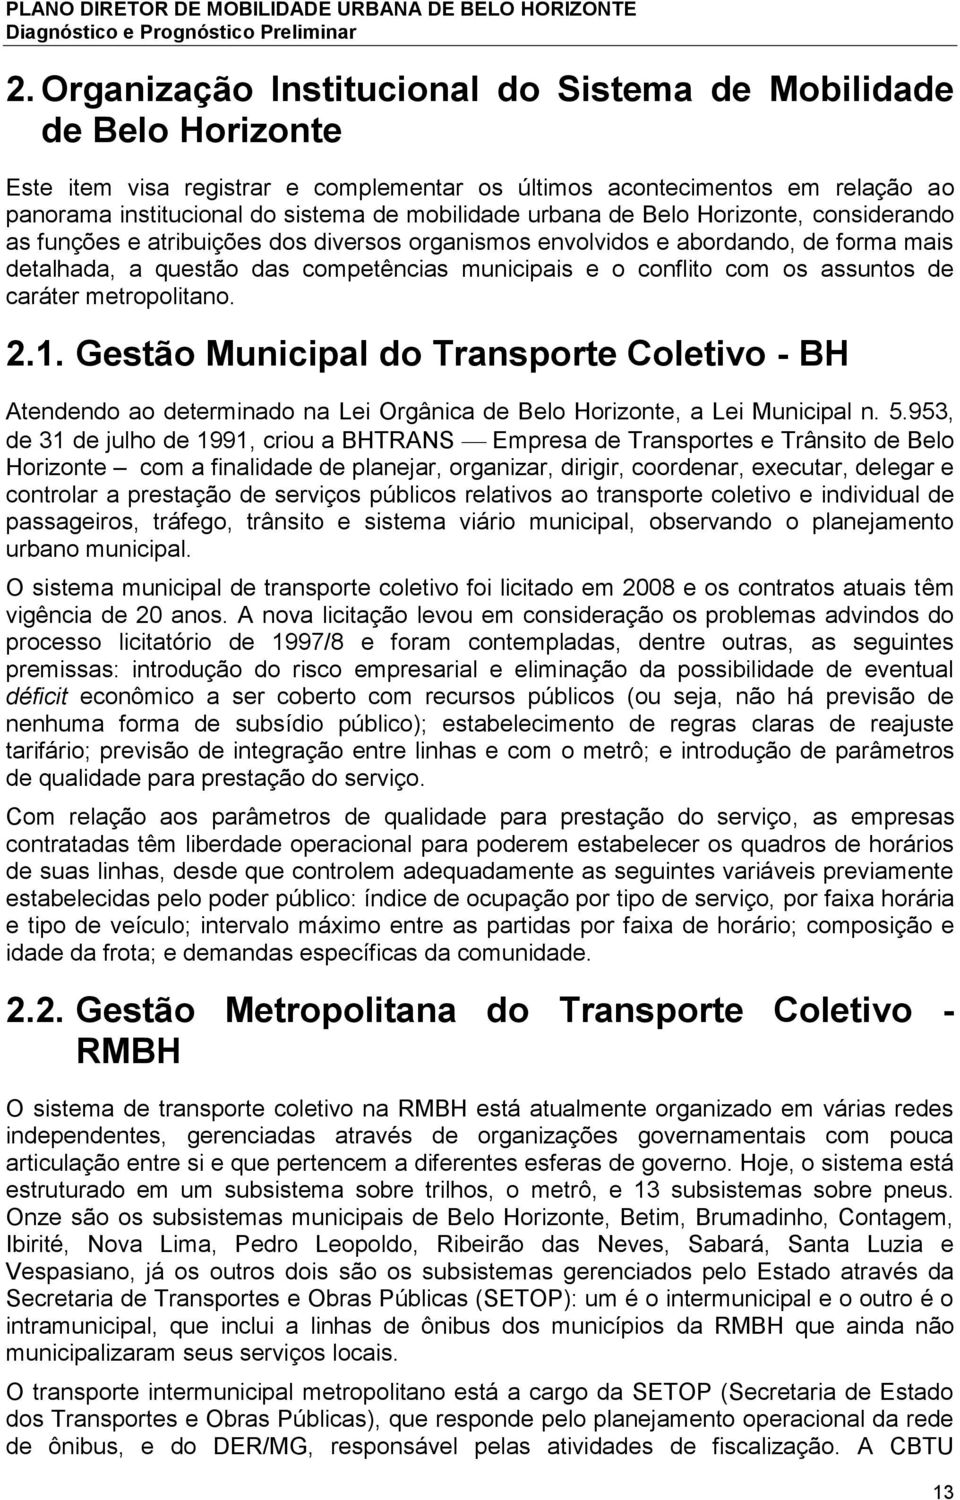 assuntos de caráter metropolitano. 2.1. Gestão Municipal do Transporte Coletivo - BH Atendendo ao determinado na Lei Orgânica de Belo Horizonte, a Lei Municipal n. 5.